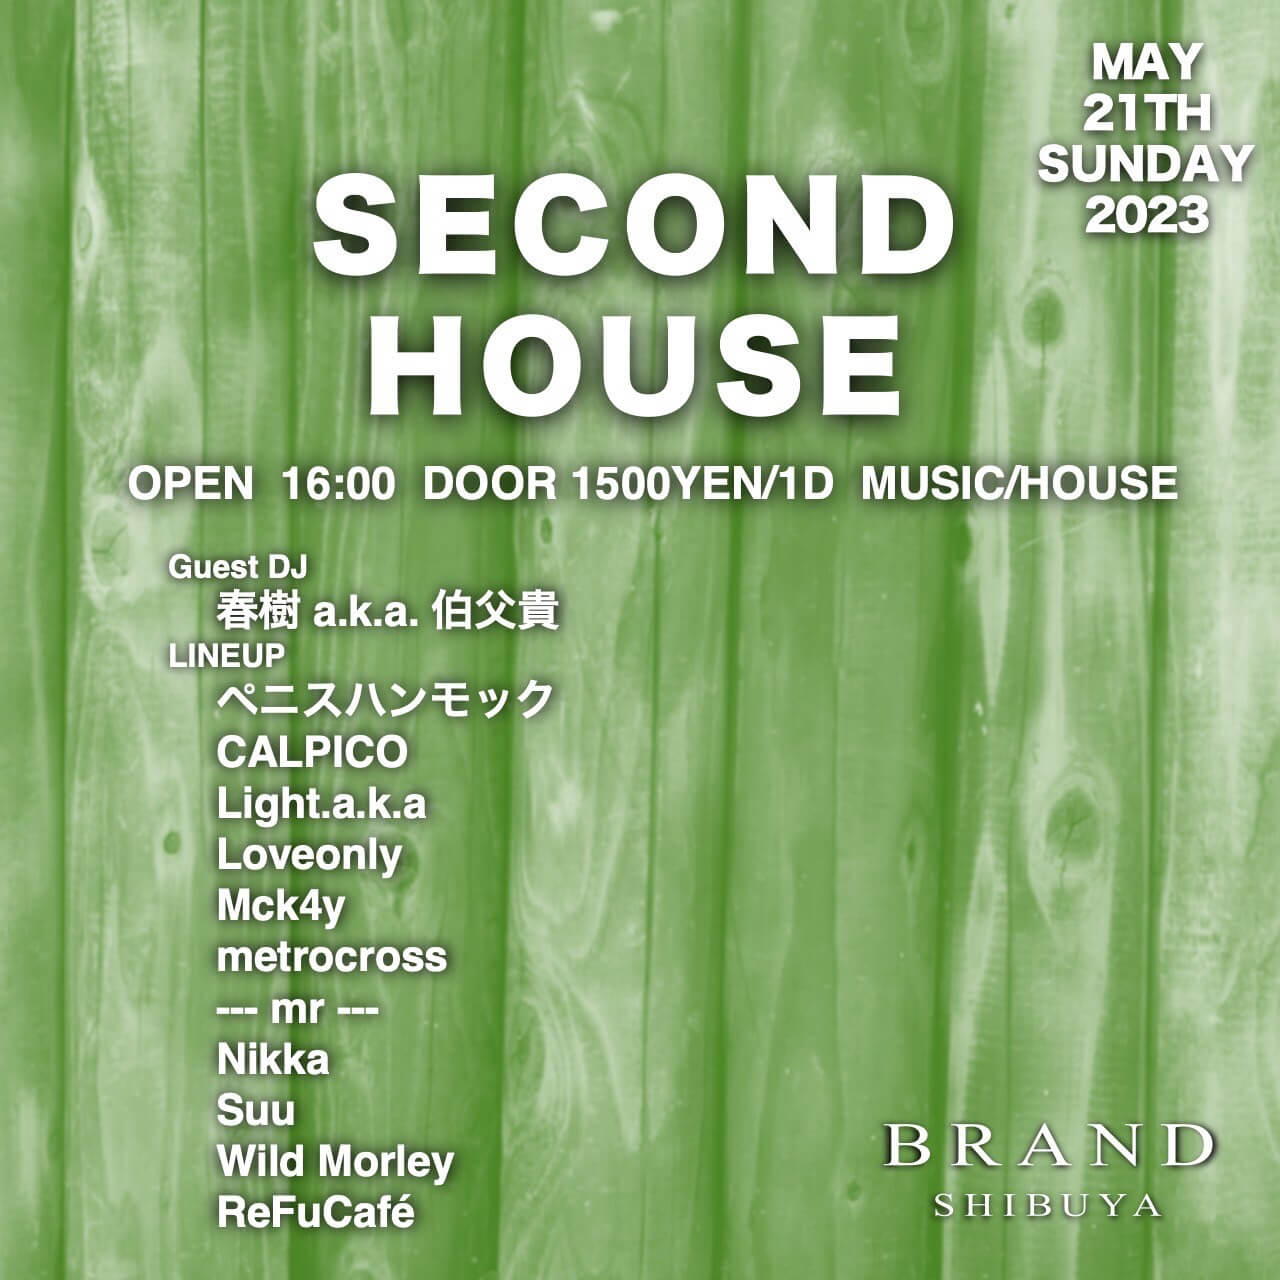 SECOND HOUSE 2023年05月21日（日曜日）に渋谷 クラブのBRAND SHIBUYAで開催されるHOUSEイベント